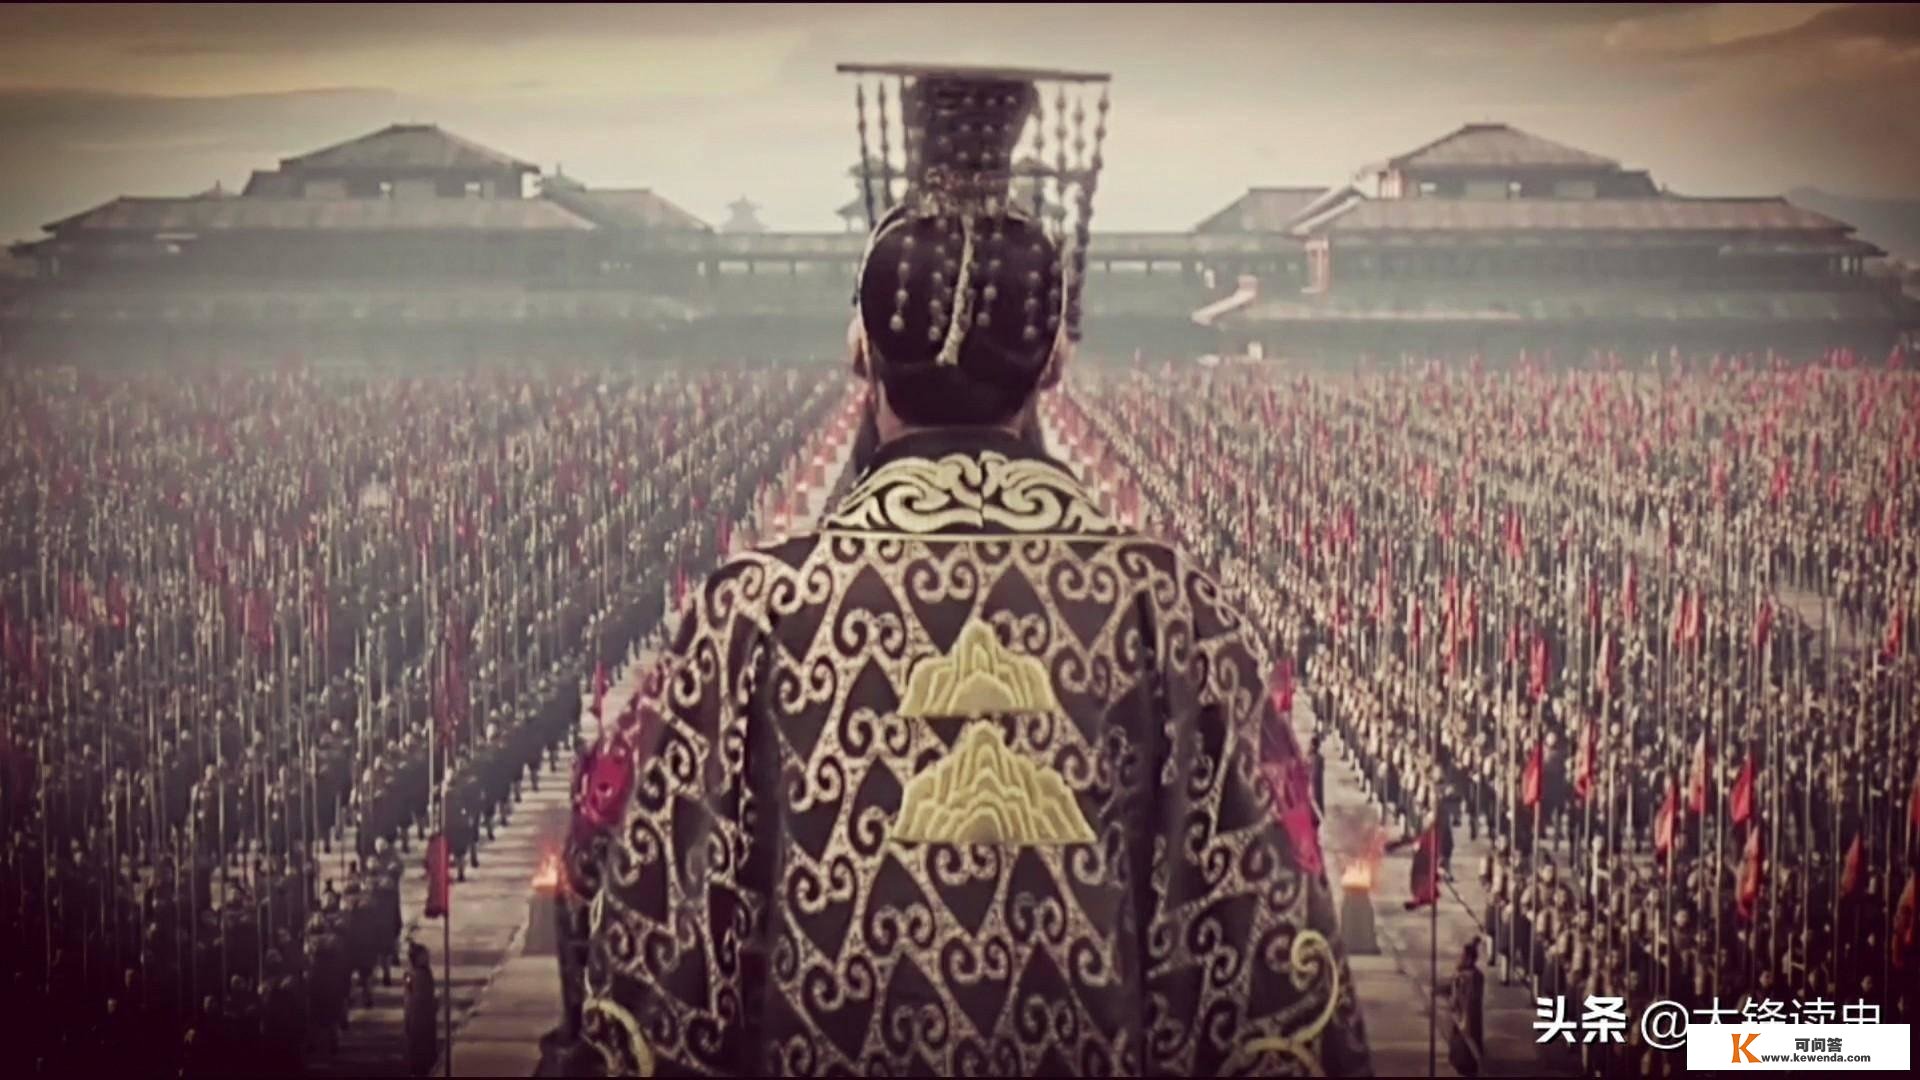 二度俘虏司马家皇帝的汉主，晚年后宫竟然有十几人佩带皇后玺印